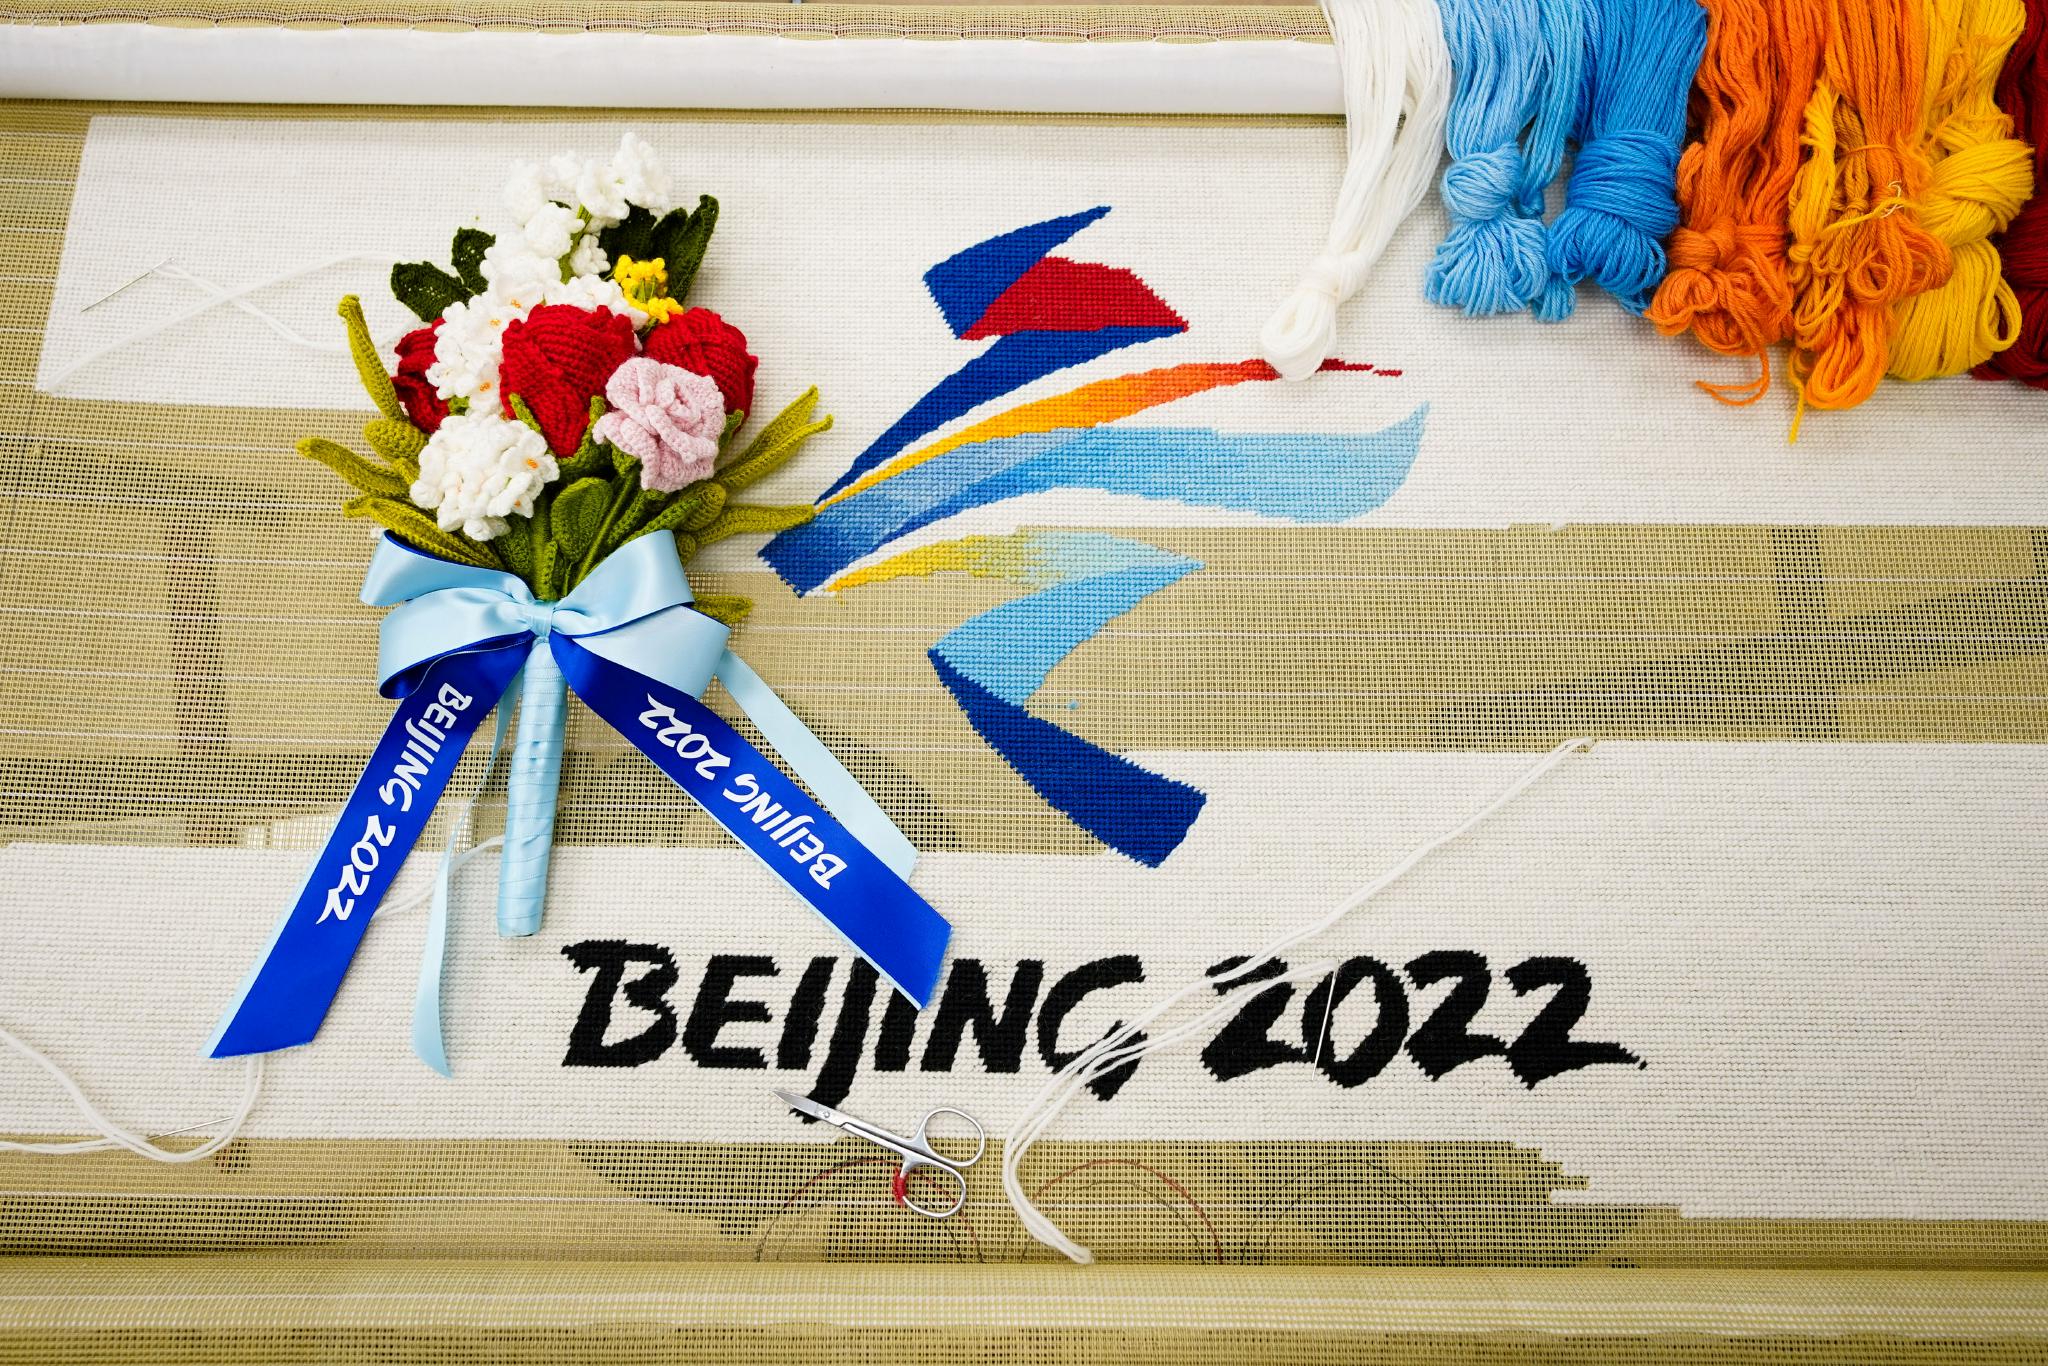 北京冬奥会花束制作图片